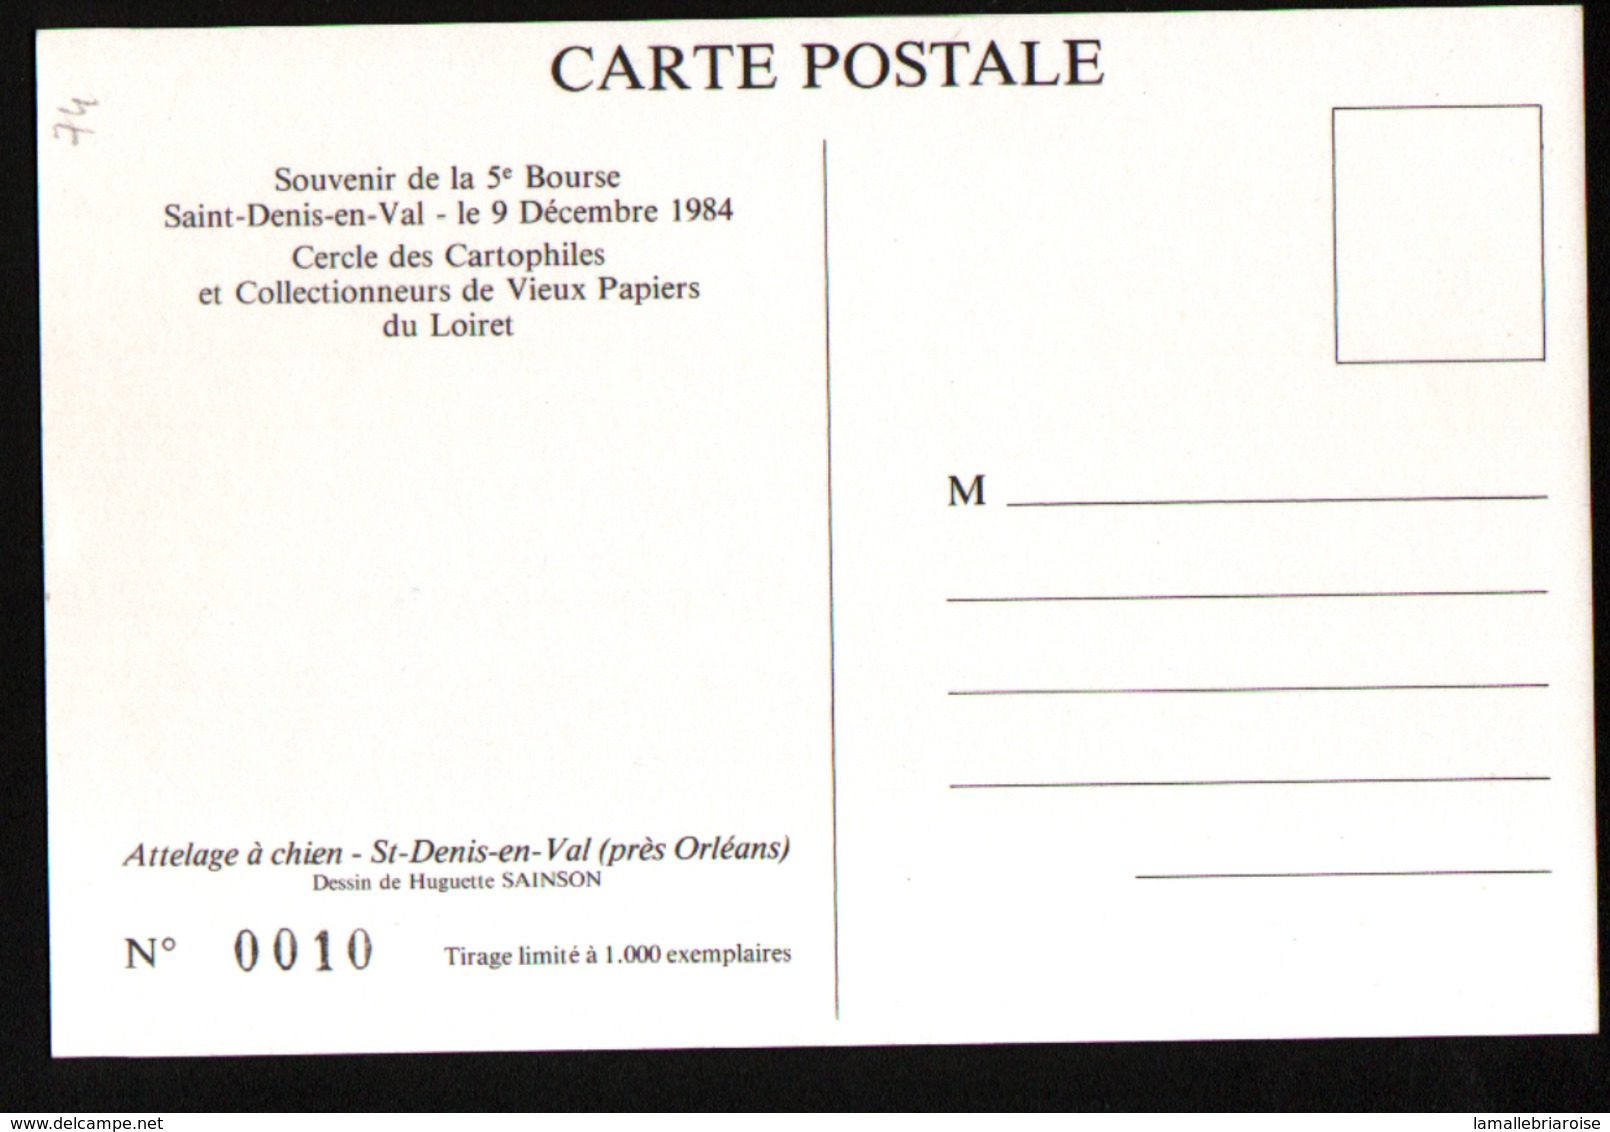 5ème Bourse, Saint Denis En Val,9 Decembre 1984, Illustrateur H. Sainson, Attelage De Chien - Bourses & Salons De Collections